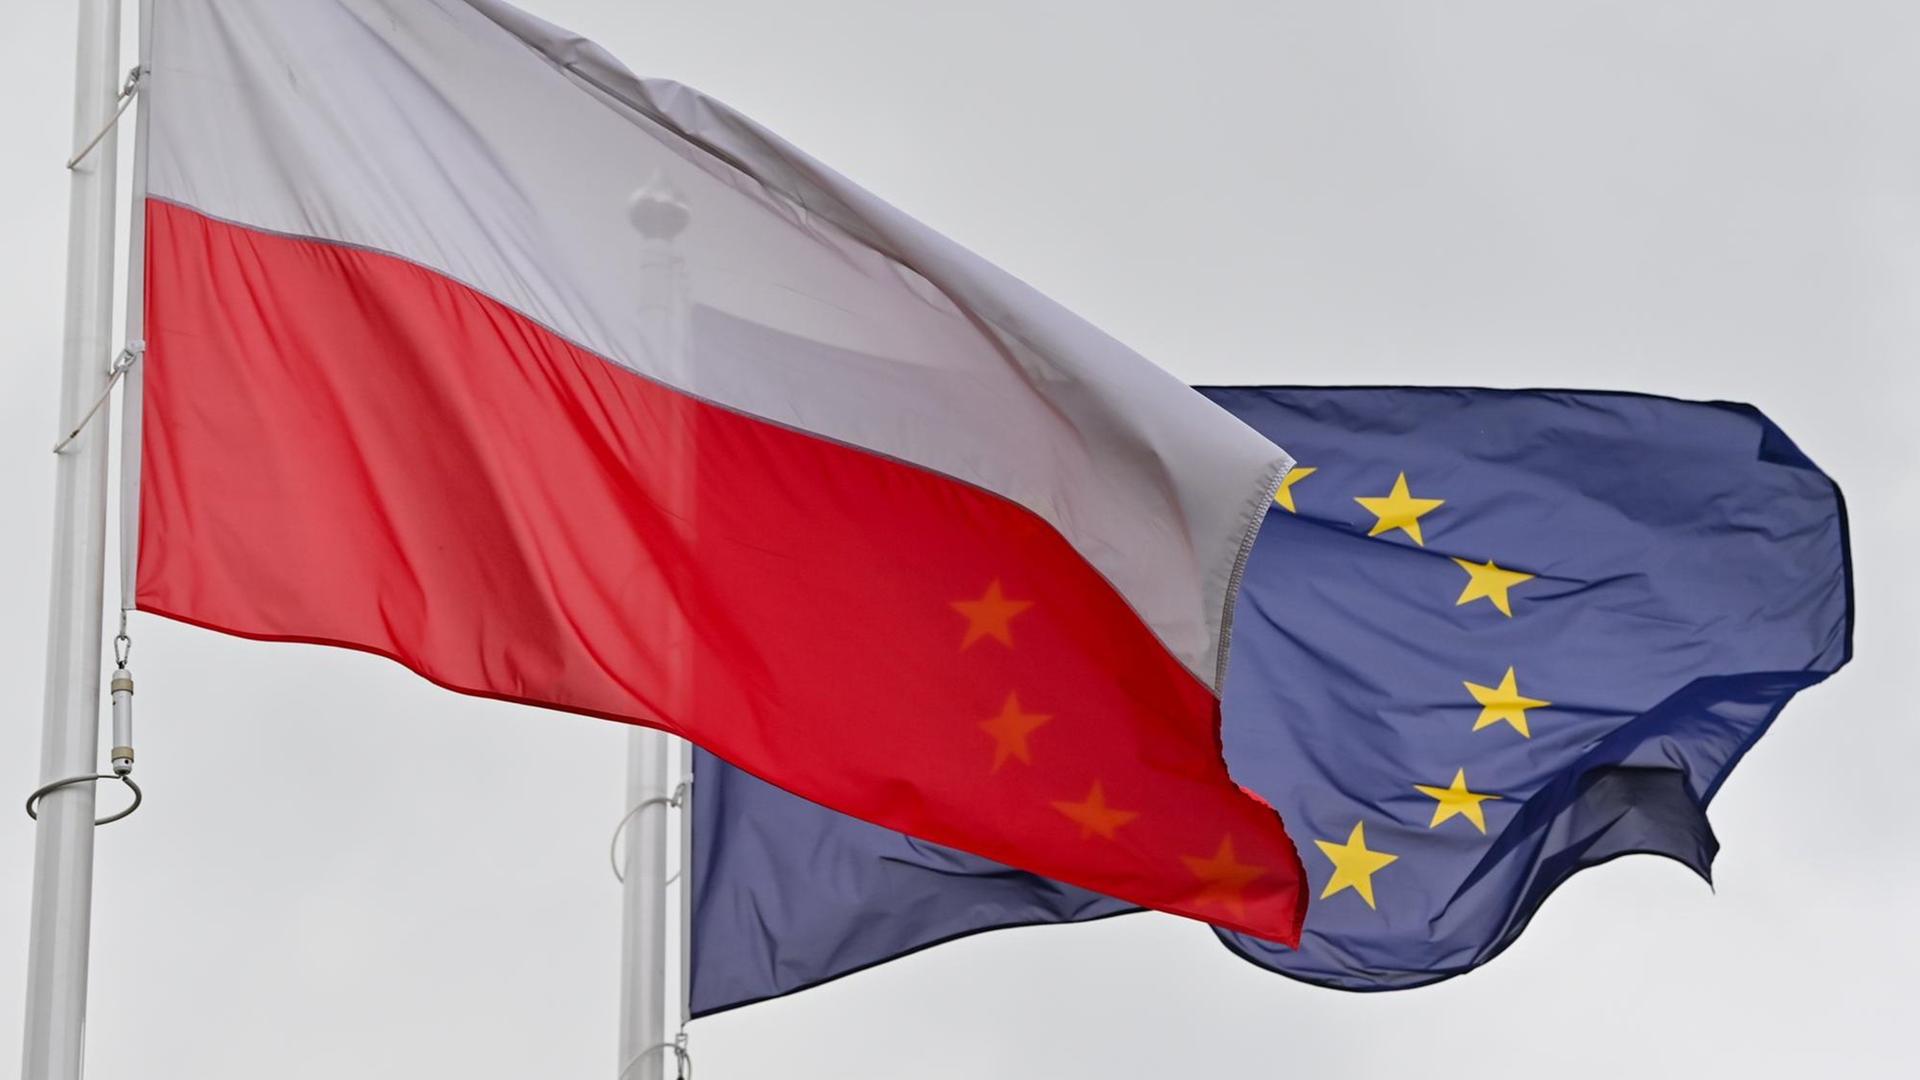 Die weiß-rote Nationalfahne Polens und dahinter die Fahne der Europäischen Union (EU) wehen im Wind